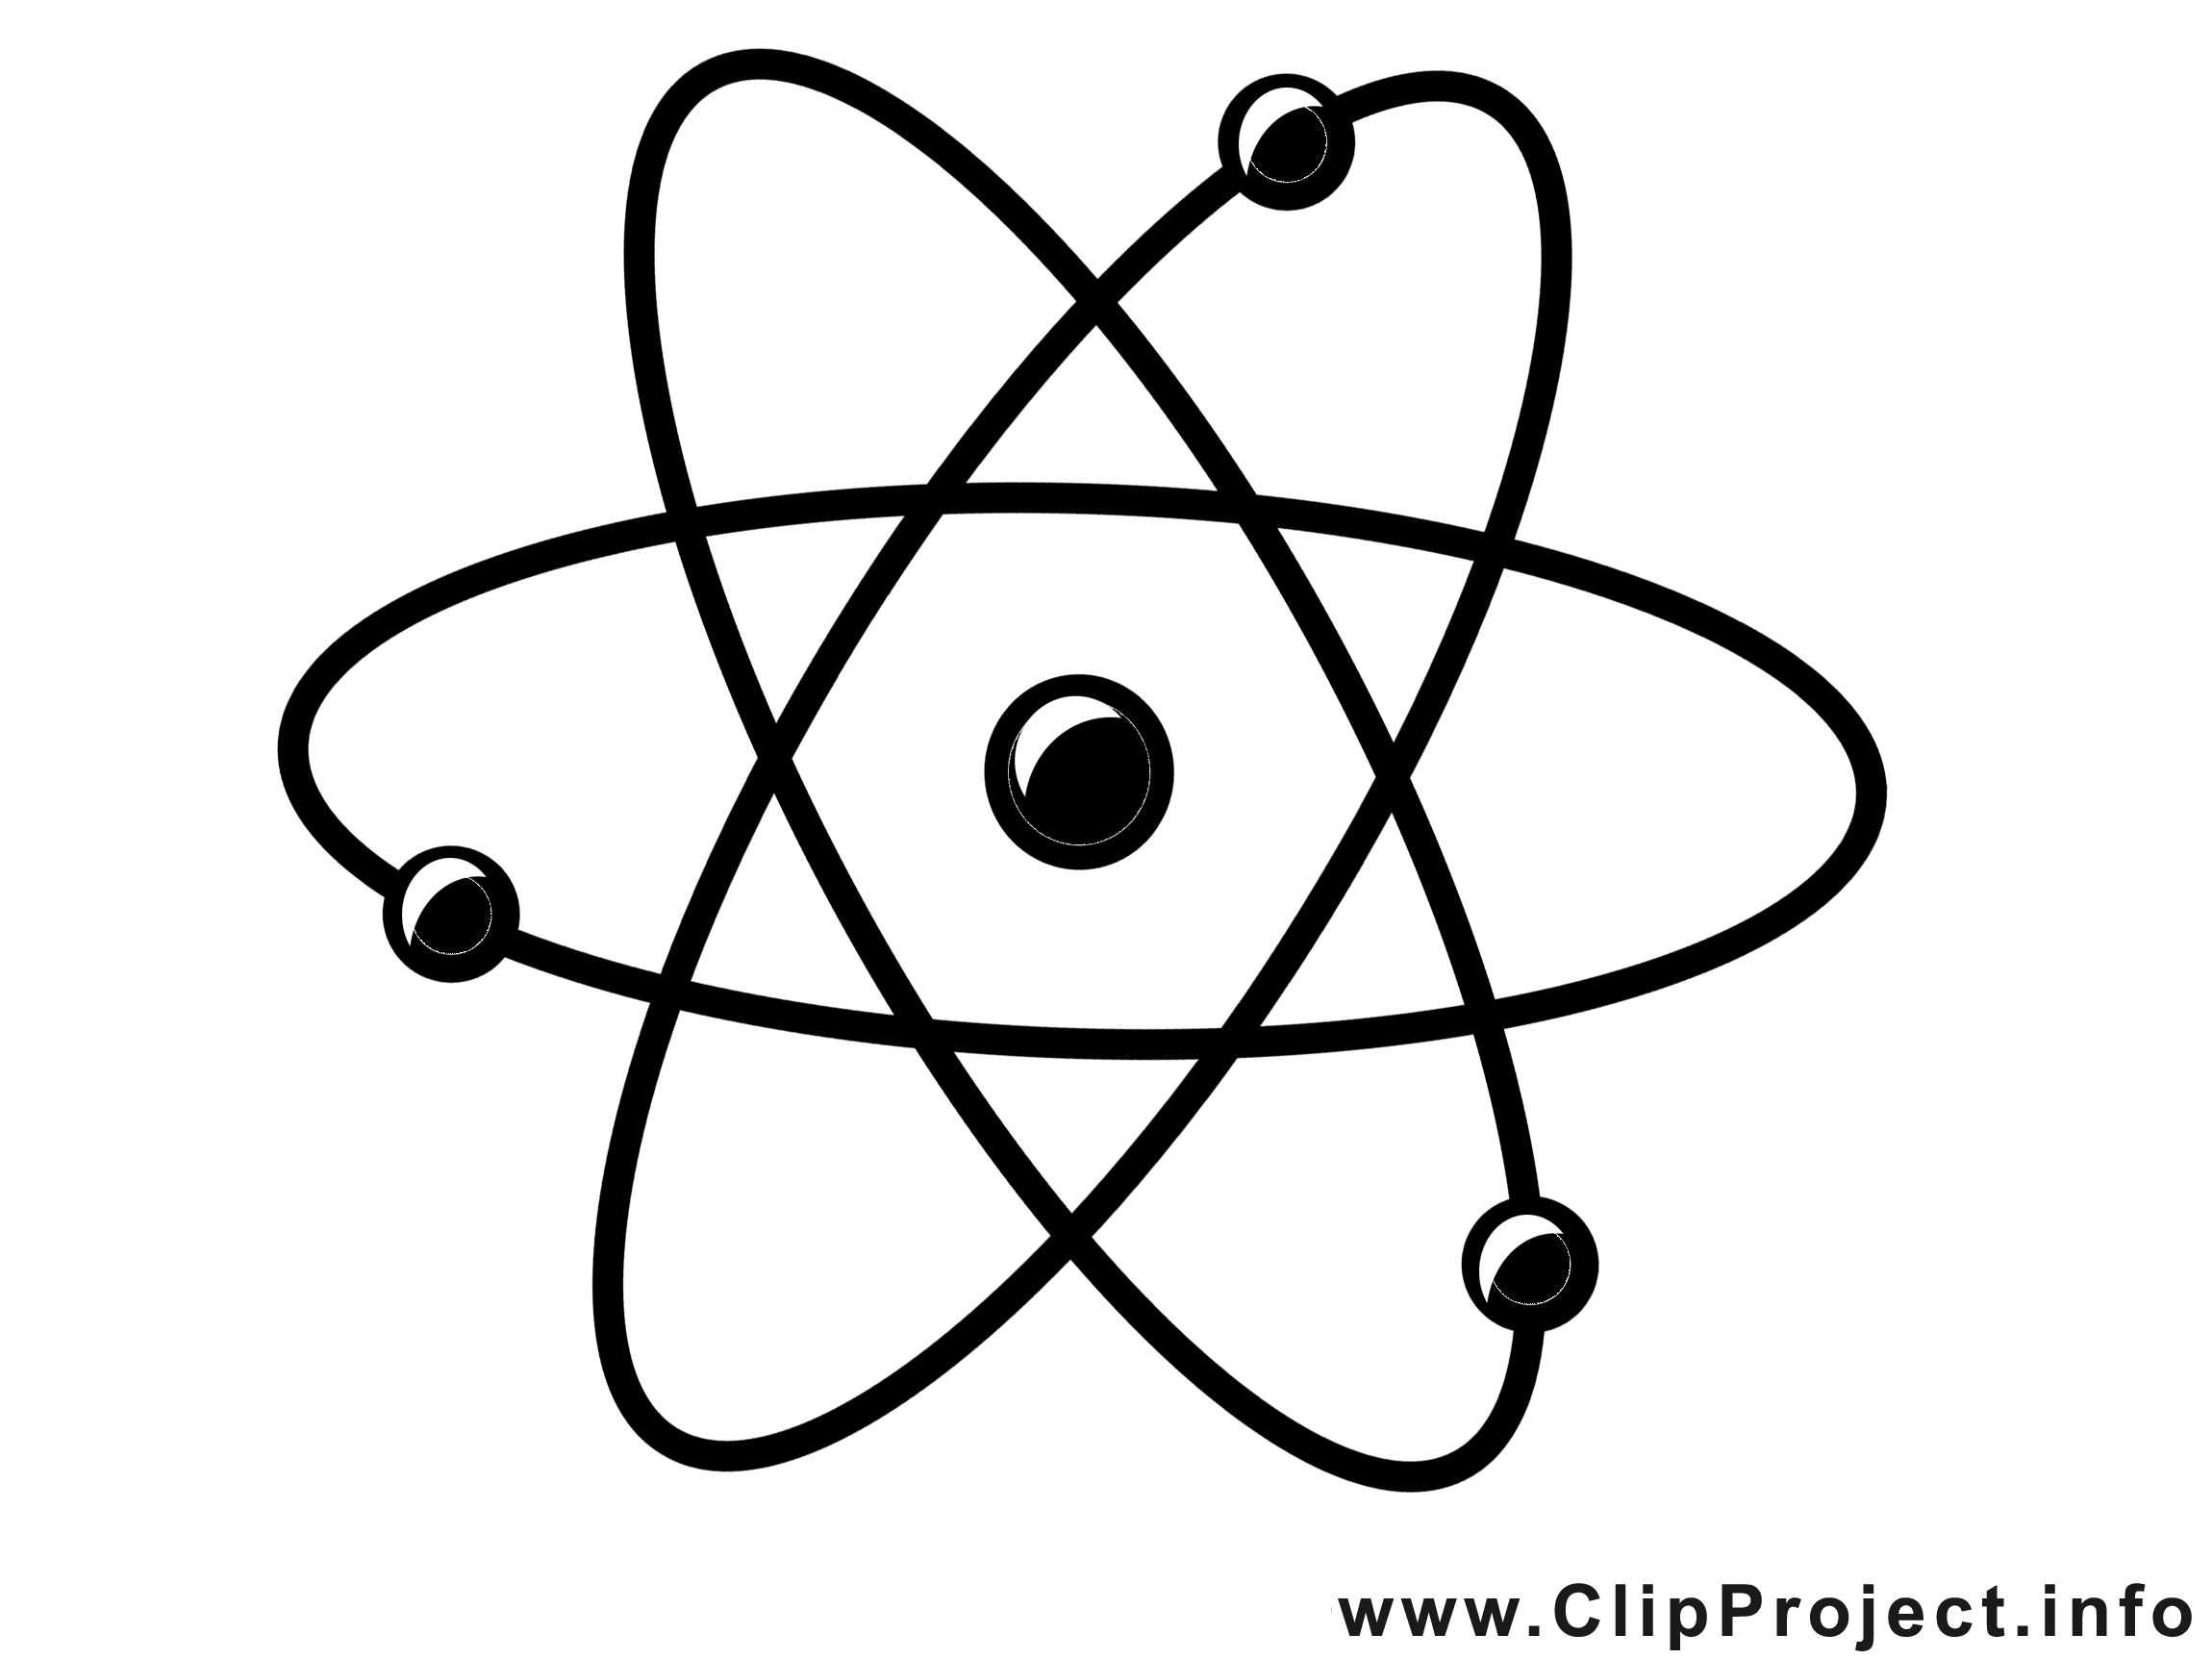 Atome images gratuites – Chimie clipart gratuit